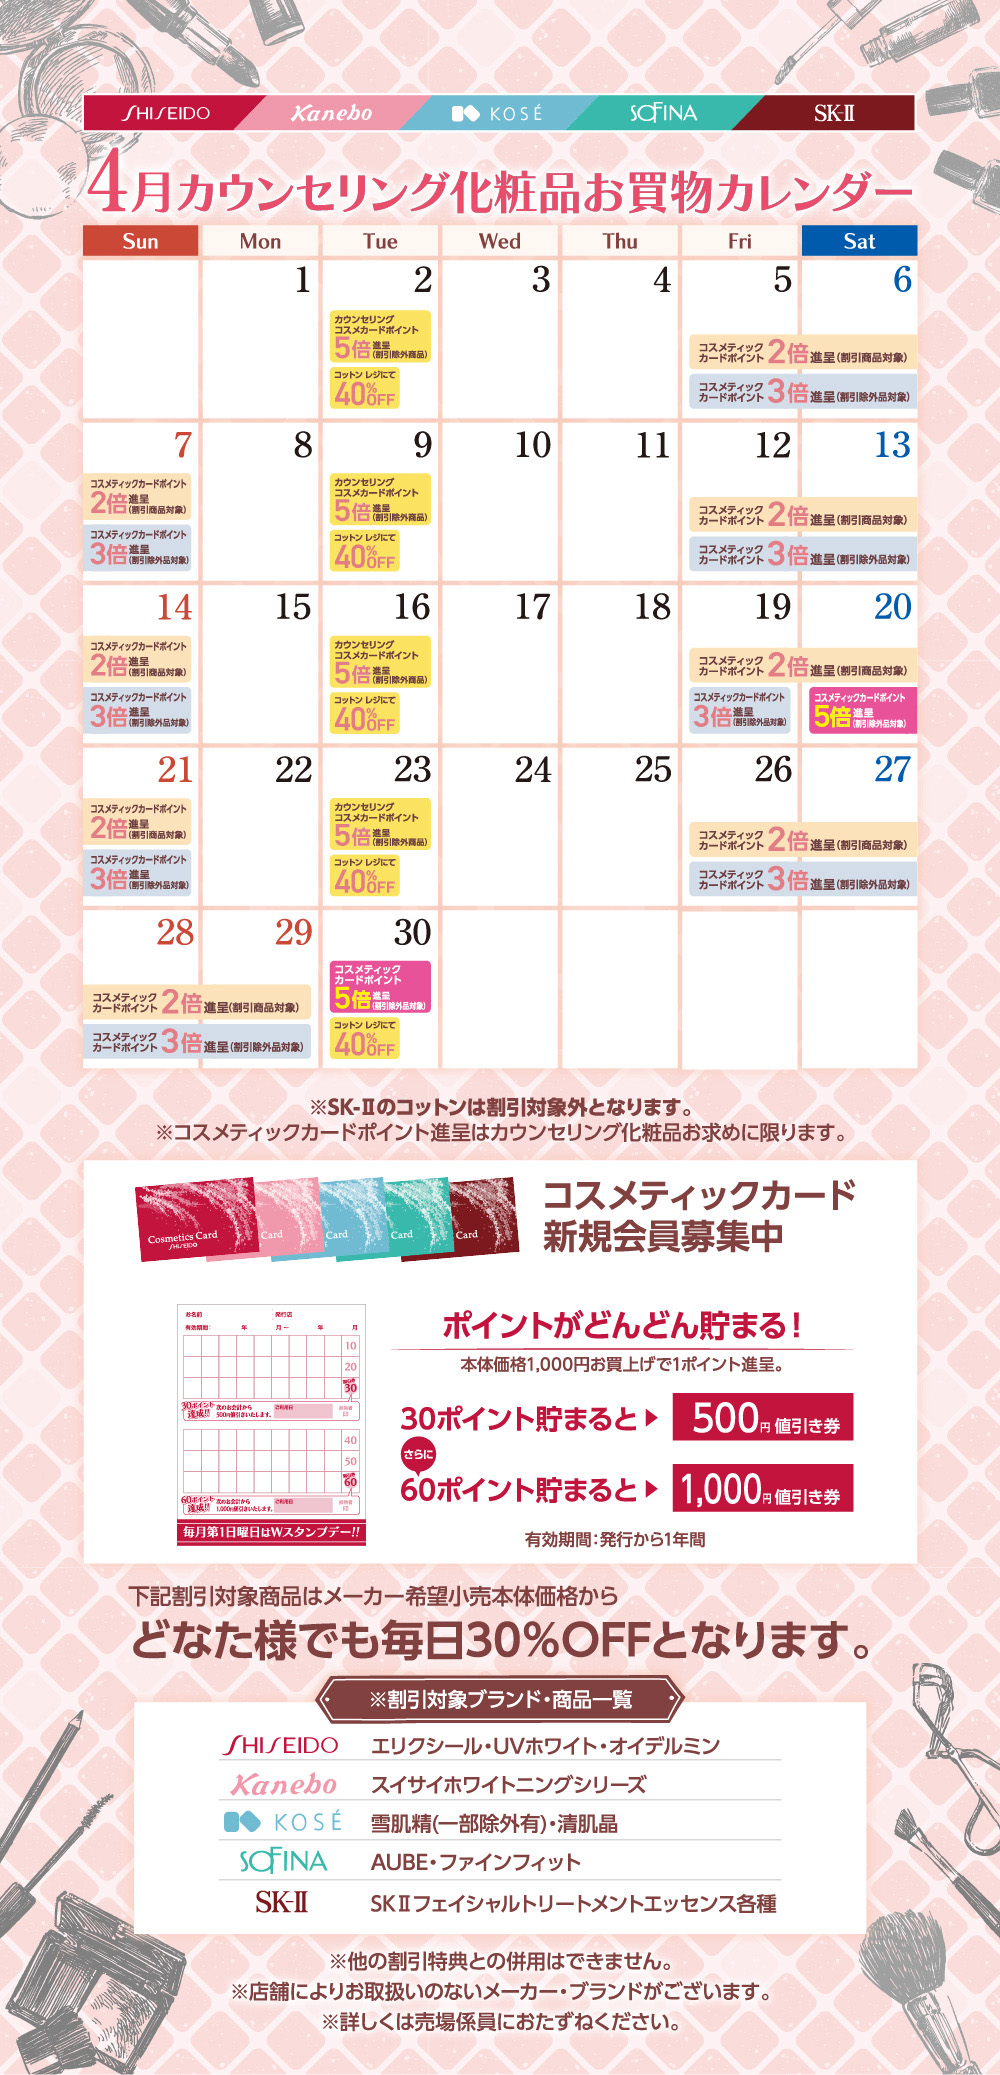 カウンセリング化粧品 4月お買物カレンダー